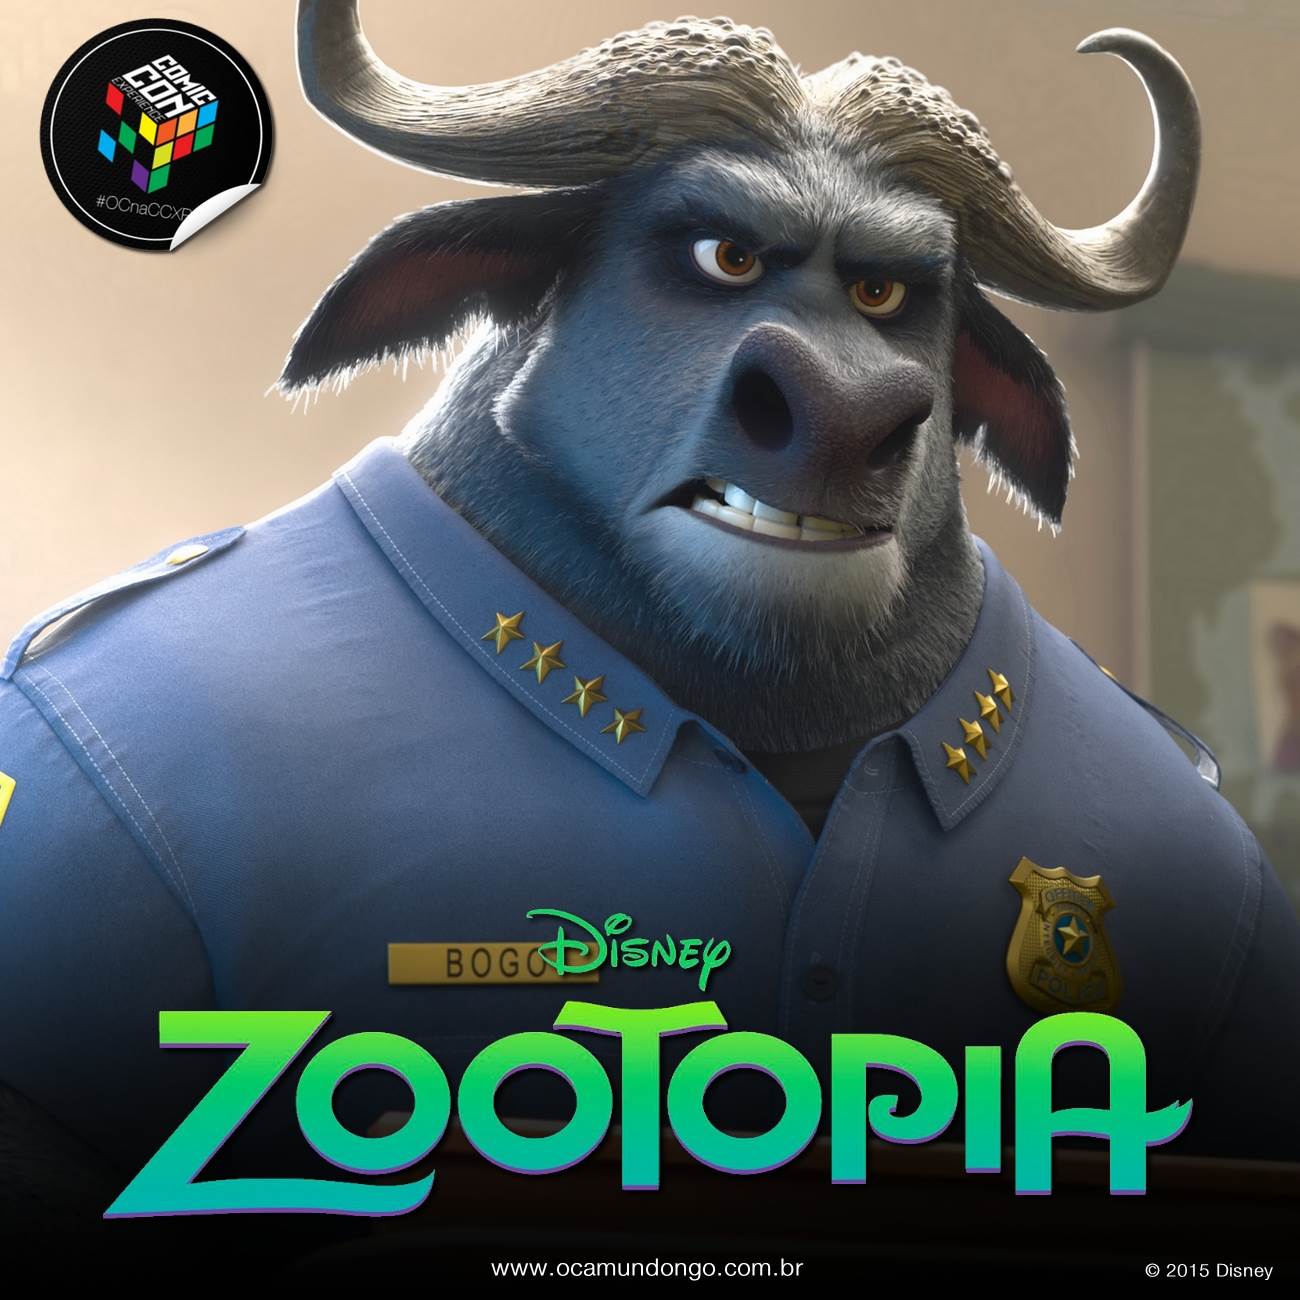 Conheça os detalhes da nova área inspirada no filme Zootopia nos